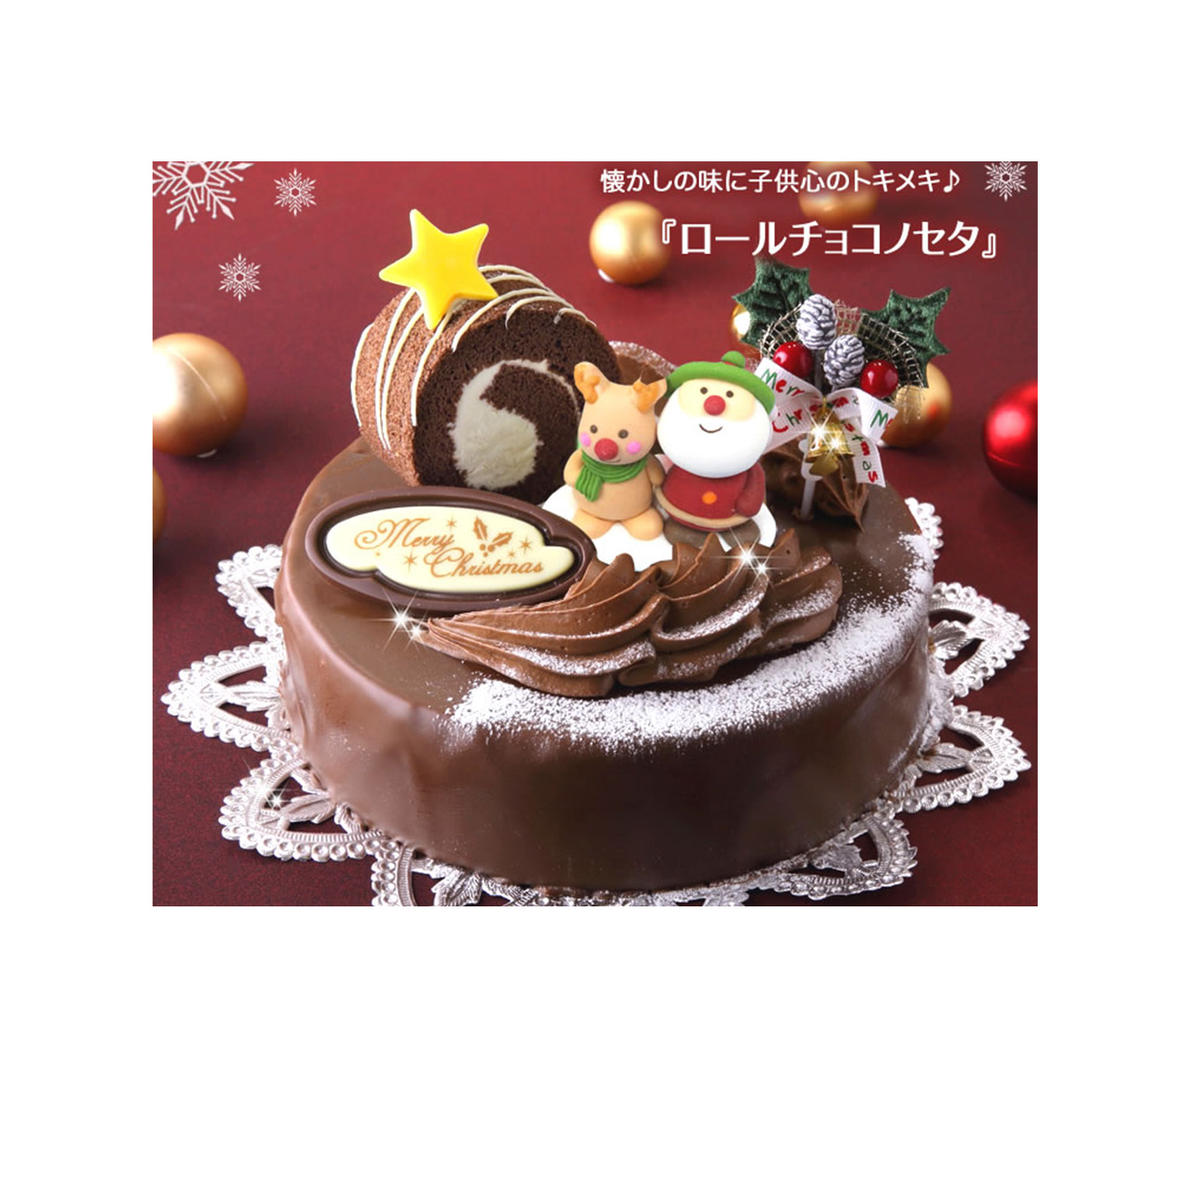 北海道・新ひだか町のクリスマスケーキ『ロールノセタ』懐かしい昭和レトロ6号サイズのチョコレートケーキ[お届け予定:12/20〜12/24]冷凍発送